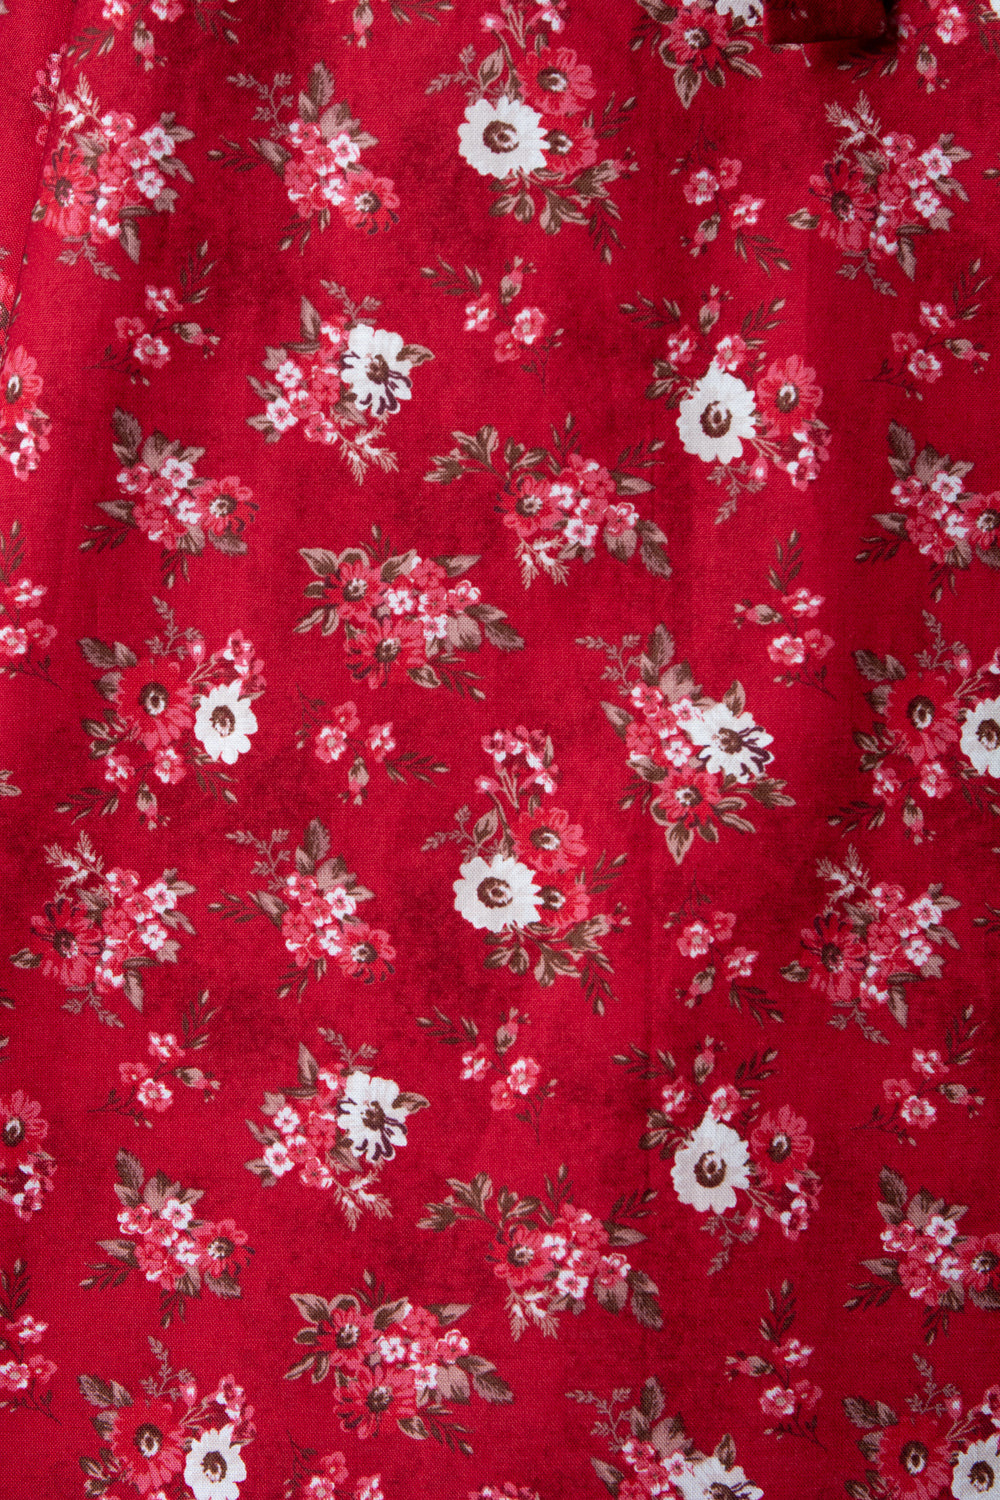 Hilda Dress - Scarlet Floral